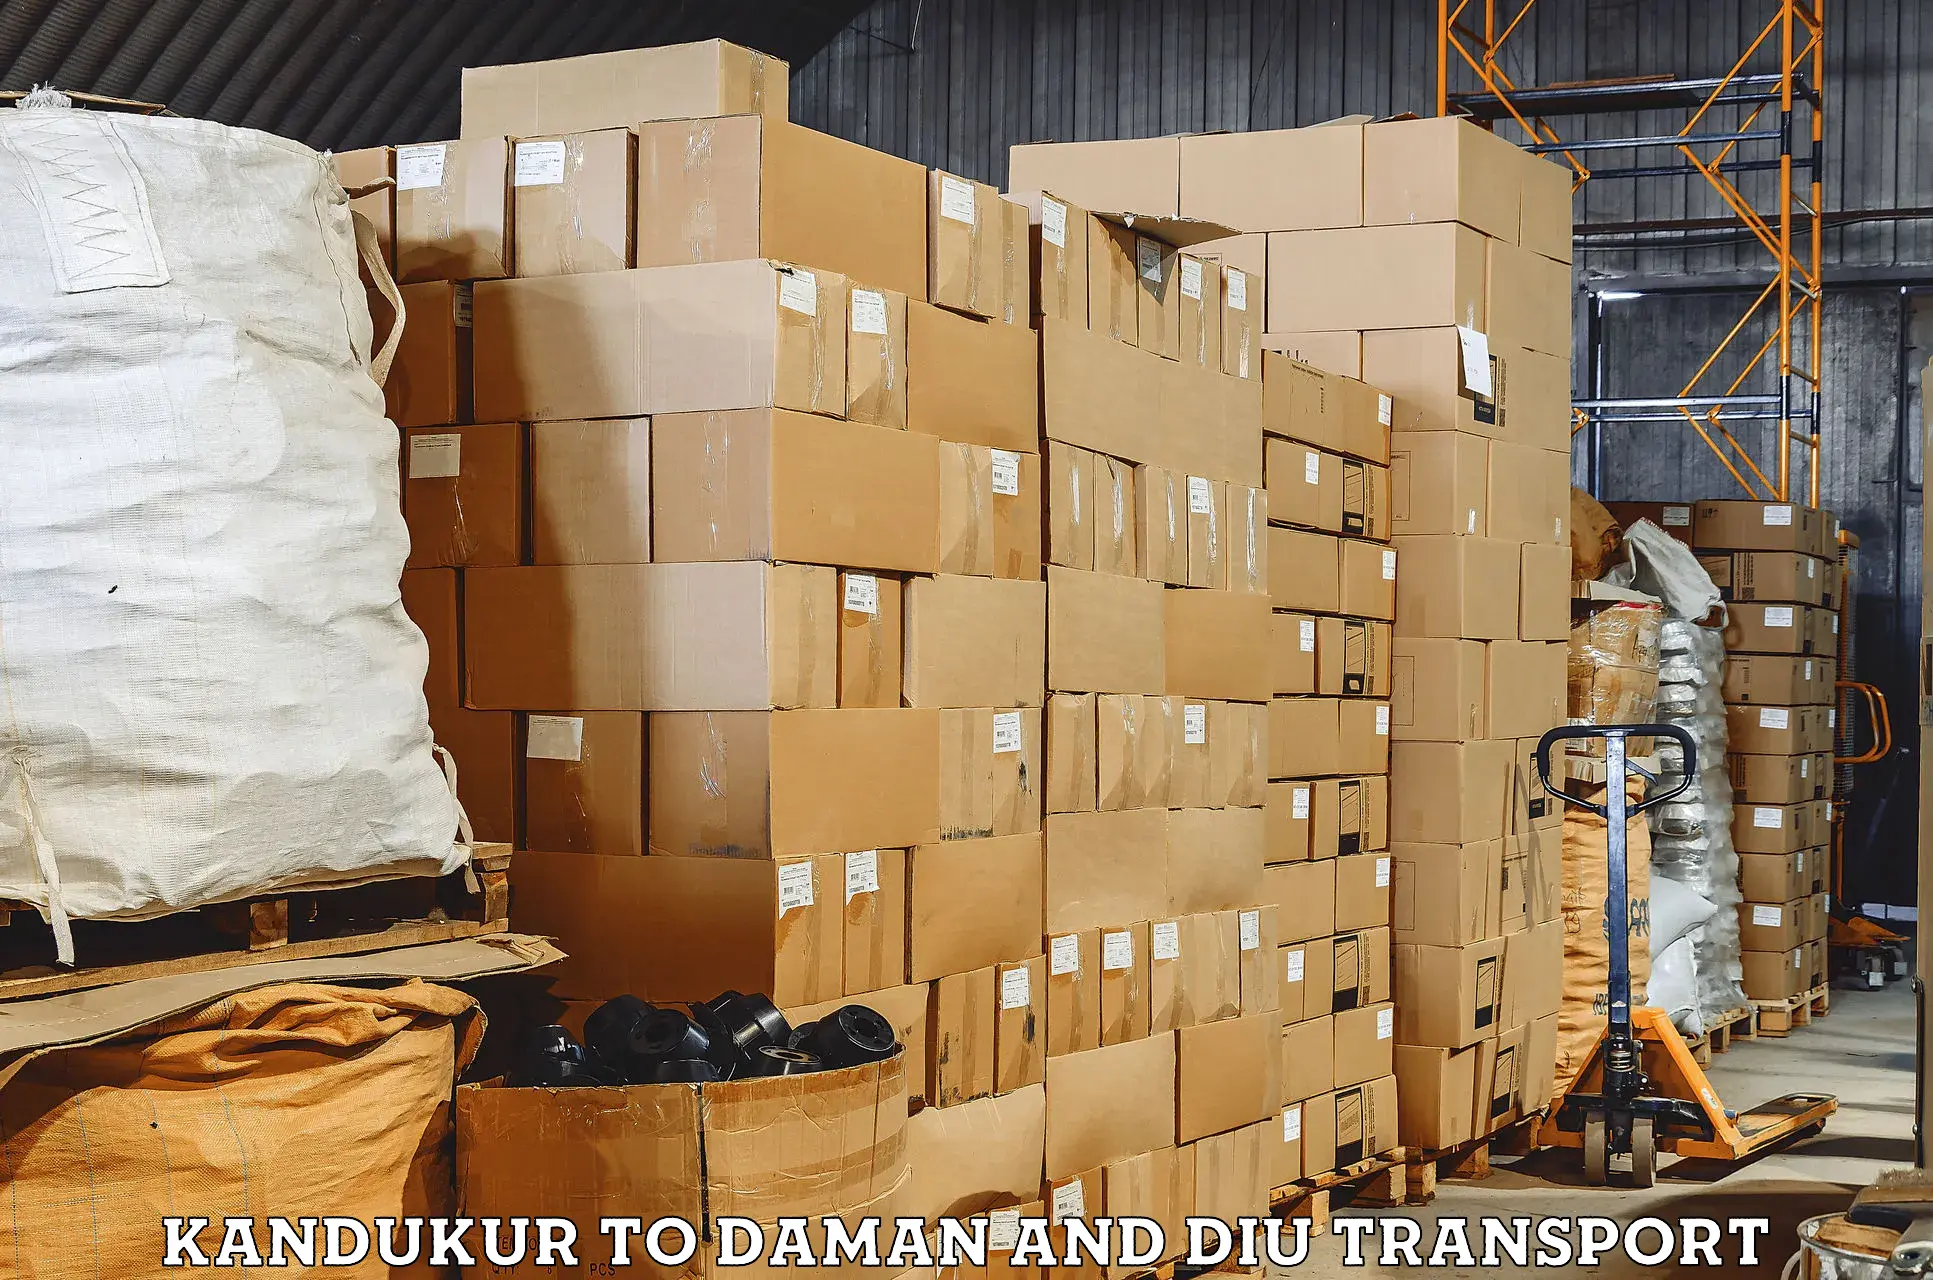 International cargo transportation services Kandukur to Daman and Diu